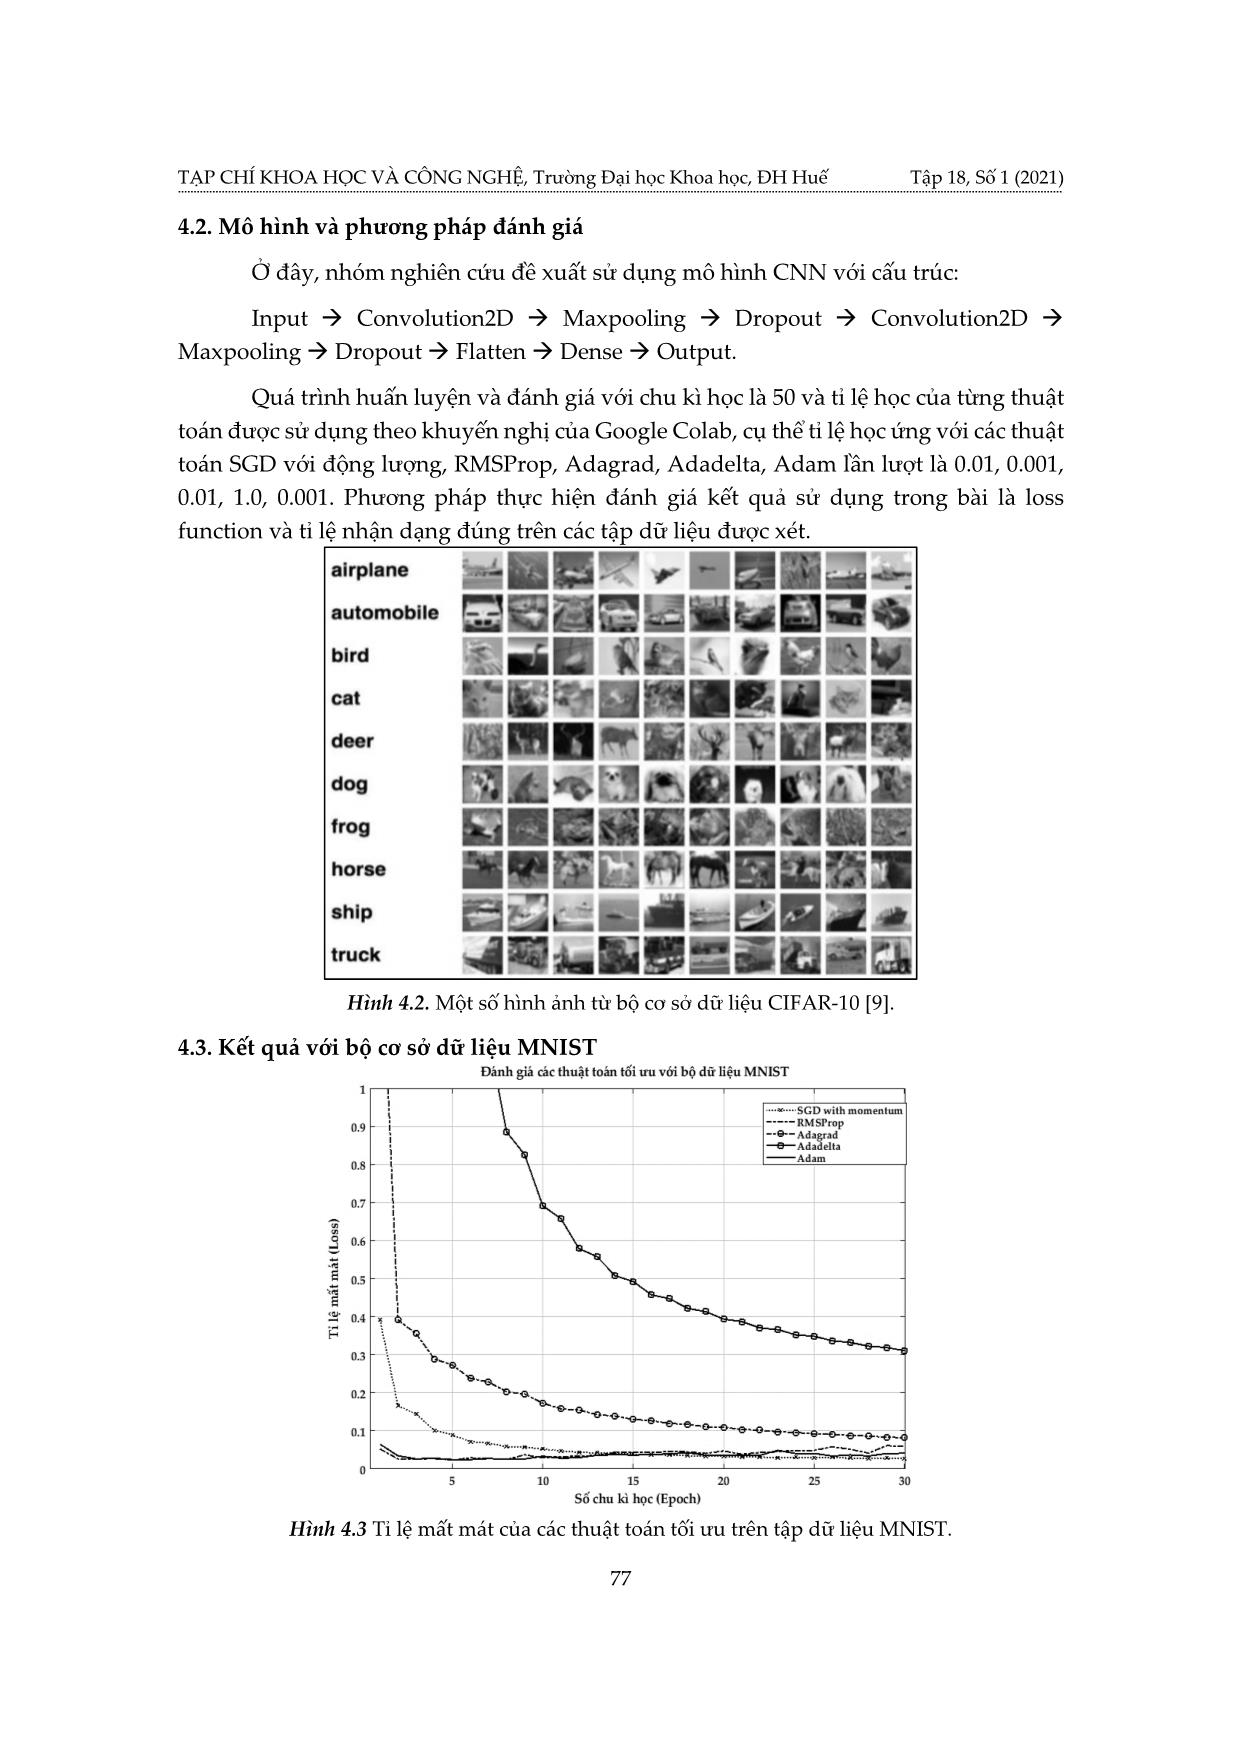 Đánh giá các thuật toán tối ưu đối với mô hình mạng nơ-ron tích chập trong tác vụ nhận diện hình ảnh trang 7